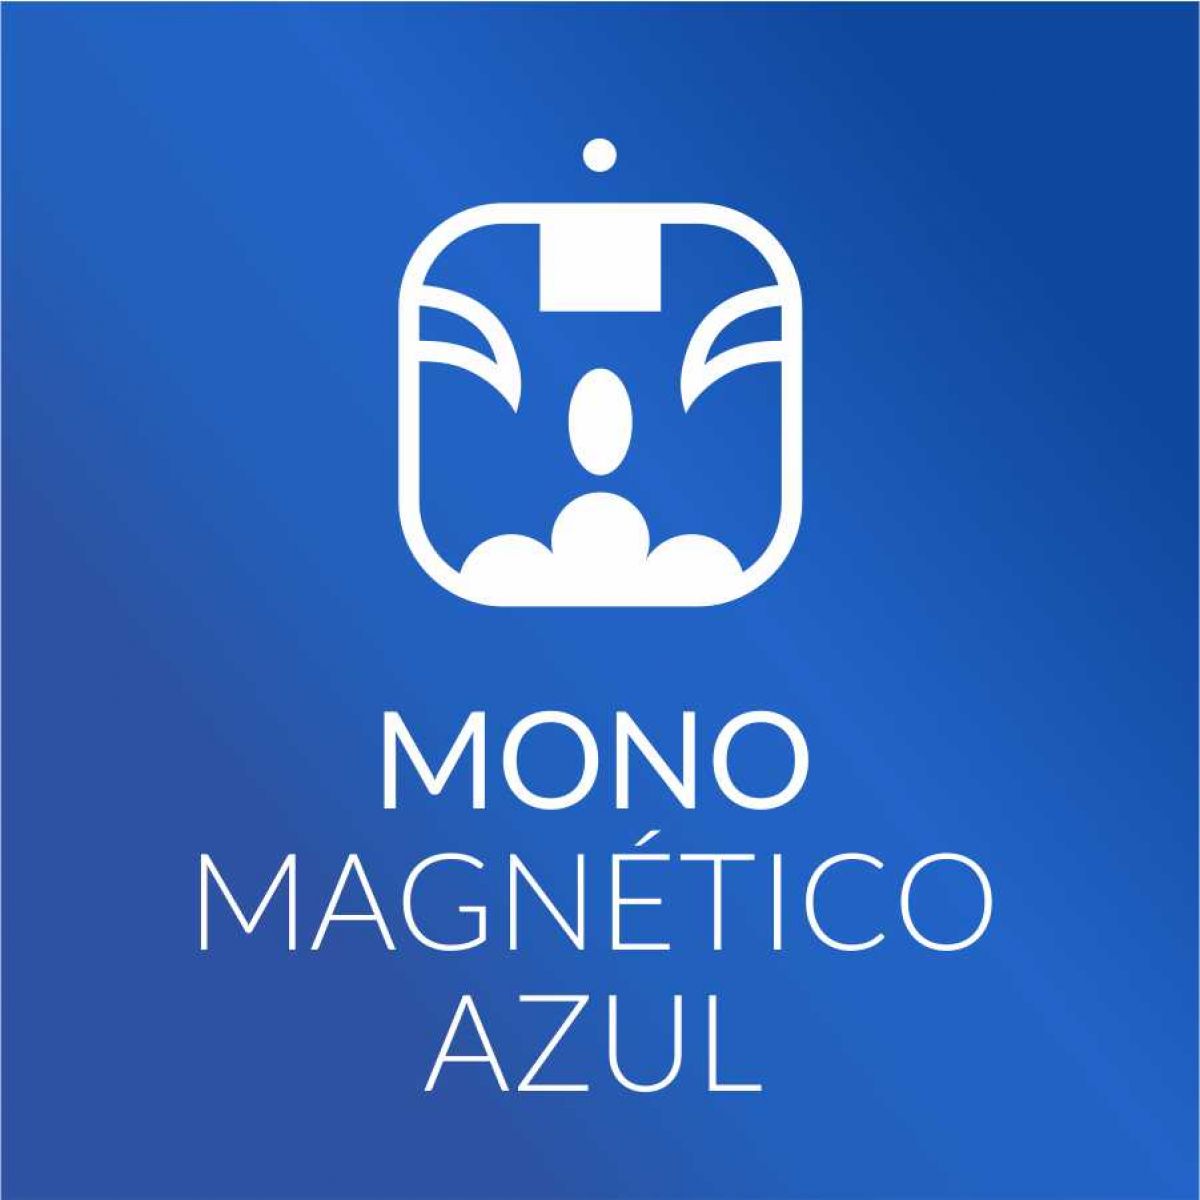 Mono Magnético Azul